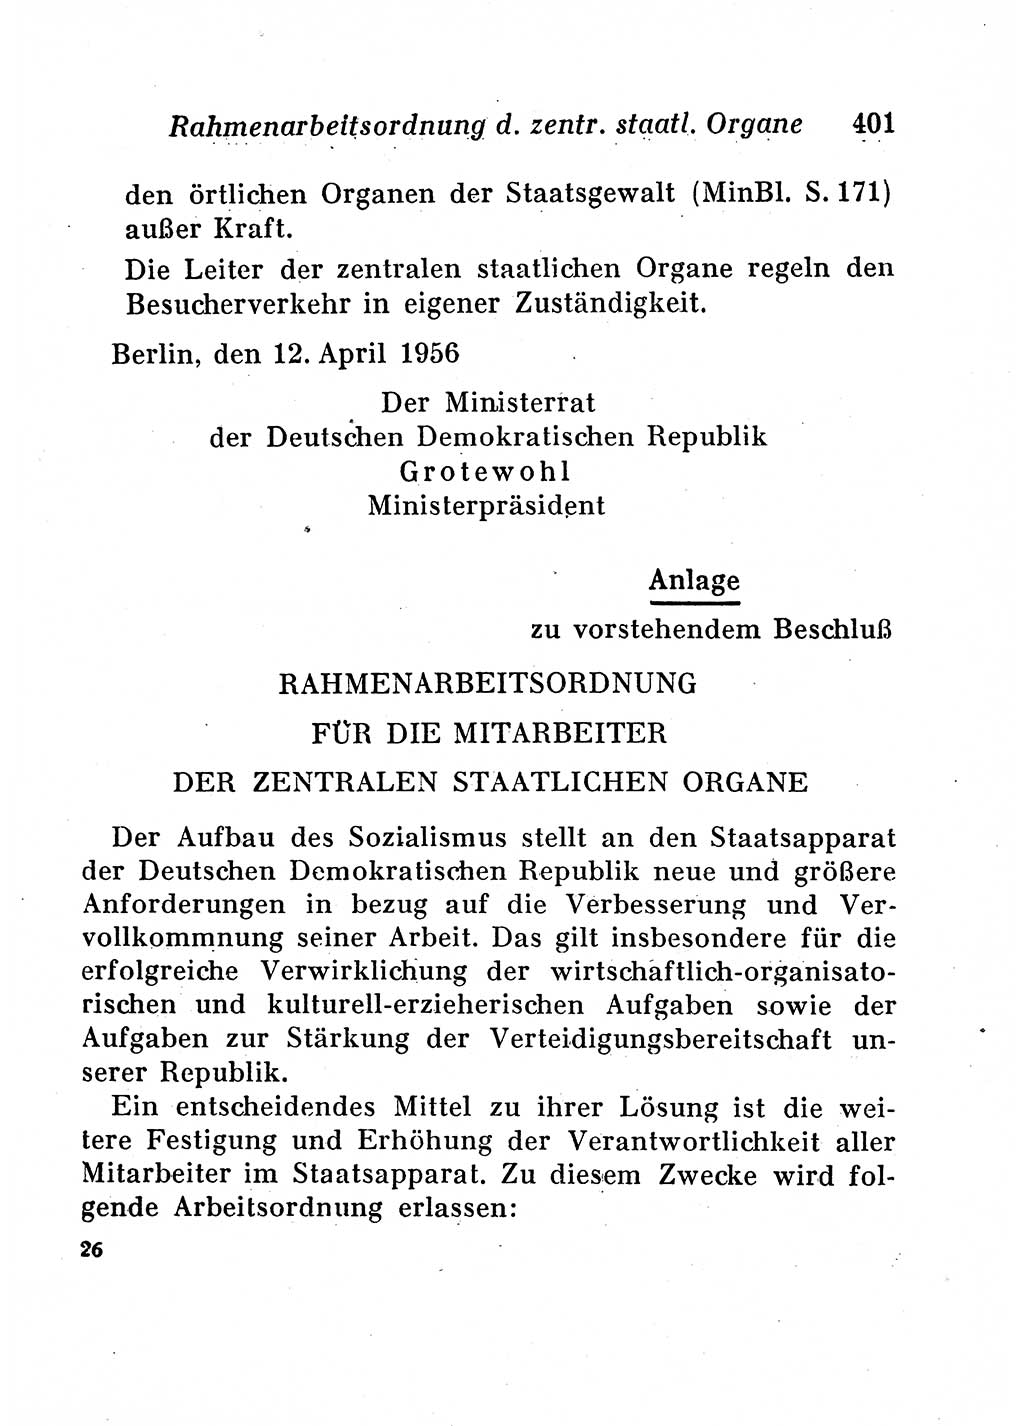 Staats- und verwaltungsrechtliche Gesetze der Deutschen Demokratischen Republik (DDR) 1958, Seite 401 (StVerwR Ges. DDR 1958, S. 401)